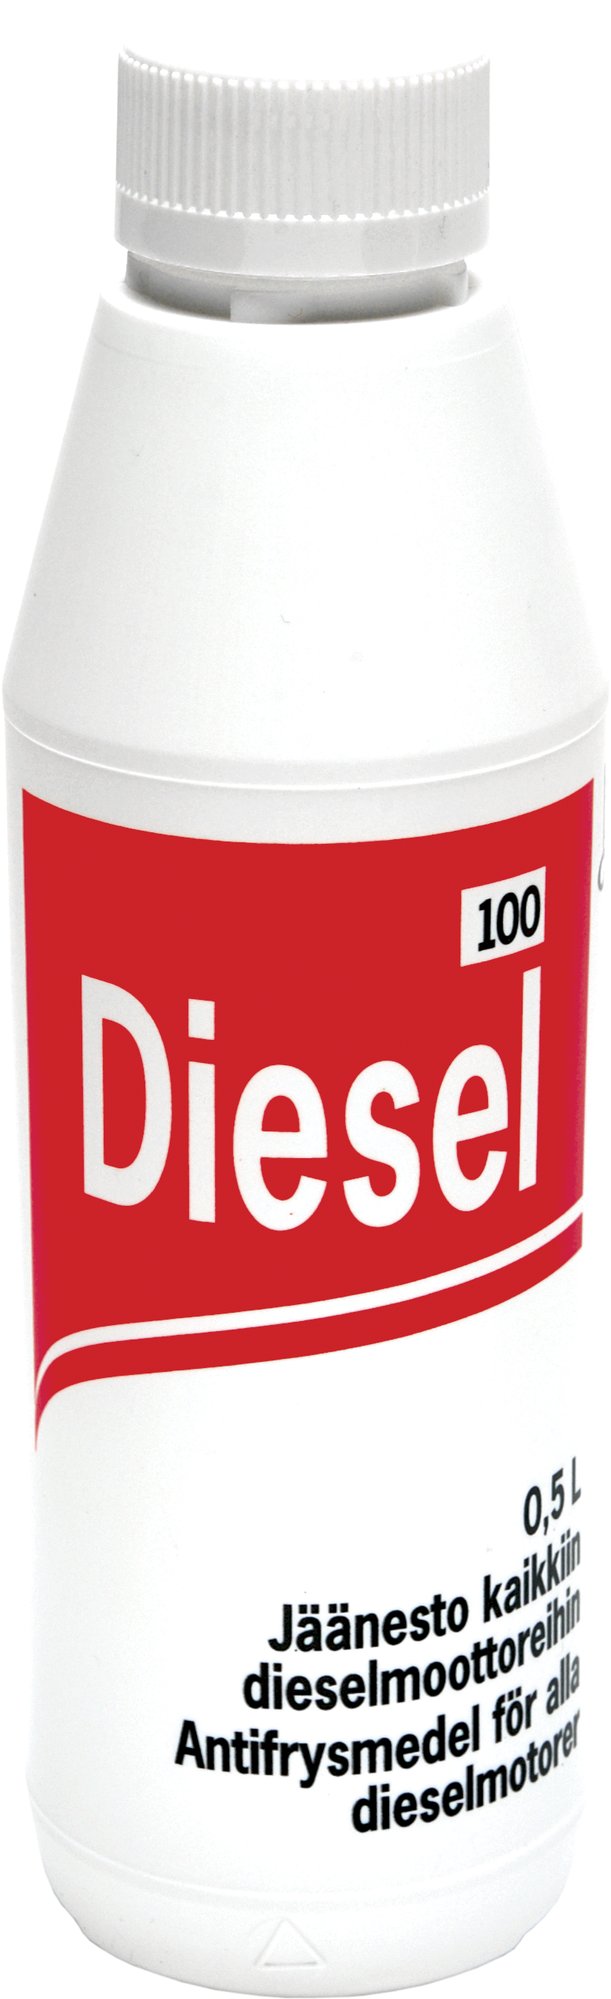 Diesel 100 500ml